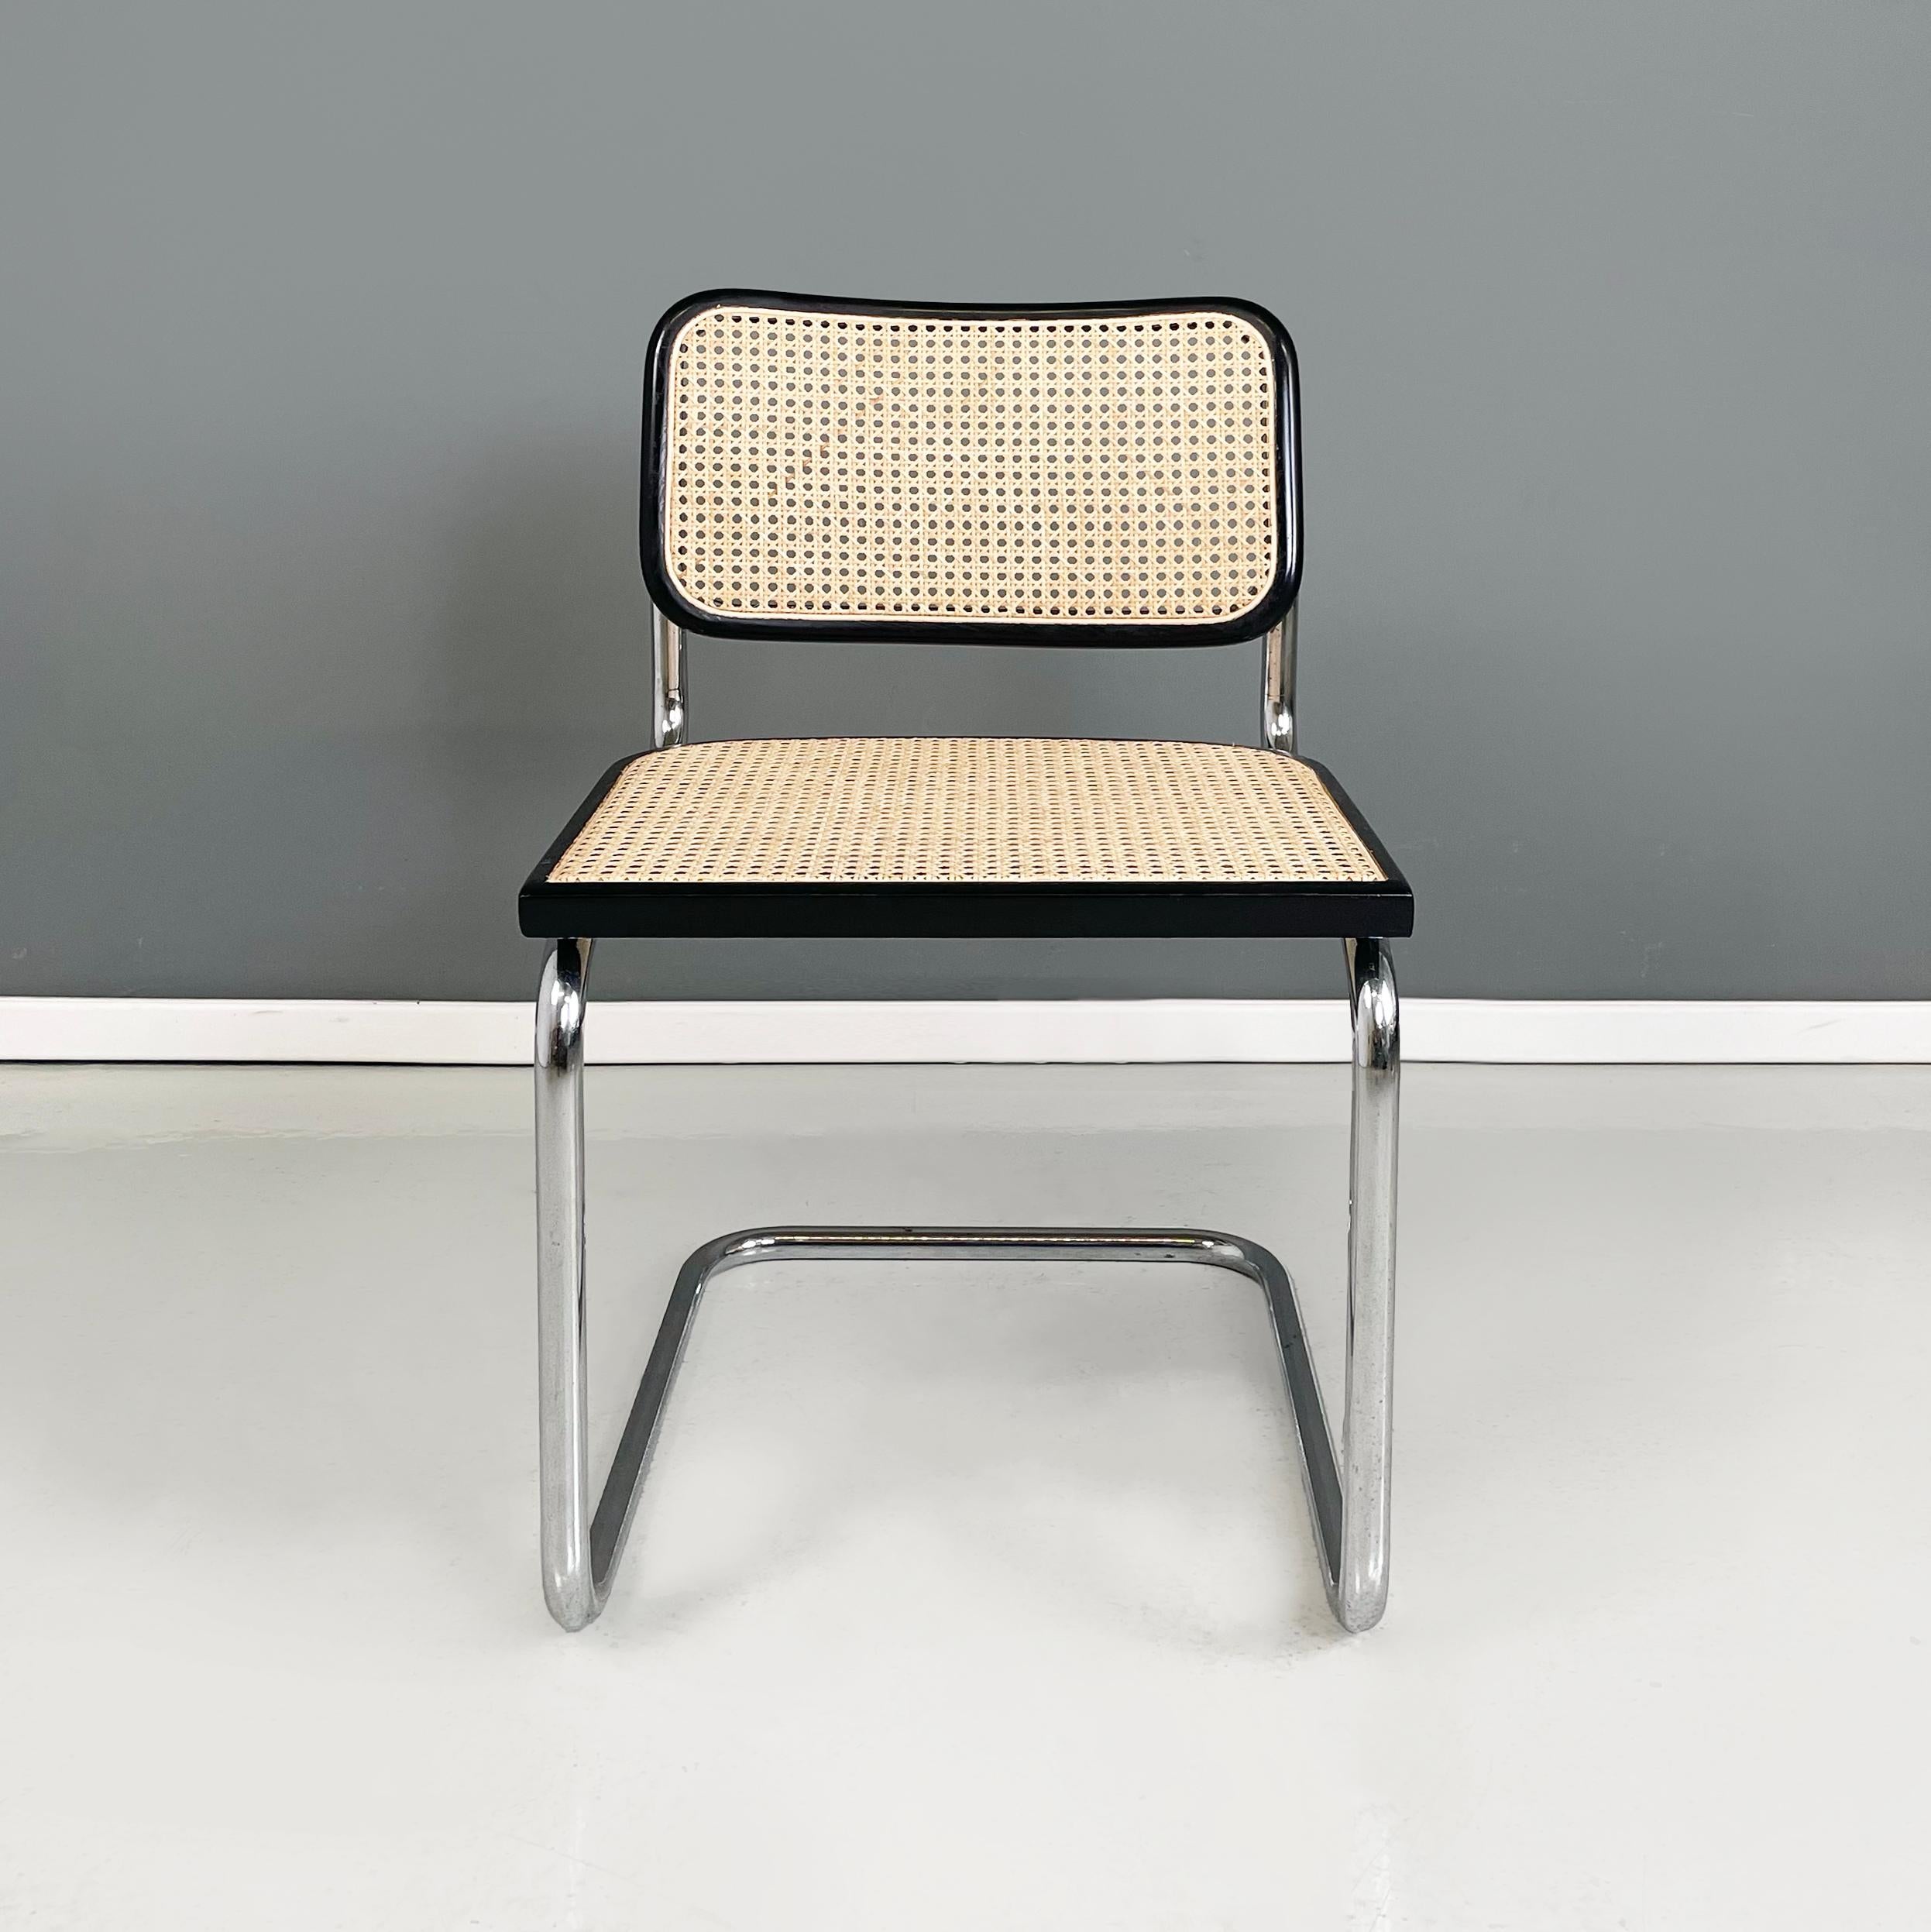 Chaise italienne moderne du milieu du siècle en paille, bois noir et acier courbé, années 1960.
Chaise avec assise et dossier en paille jaune clair de Vienne avec profils en bois peints en noir. La structure est en acier tubulaire. 
1960